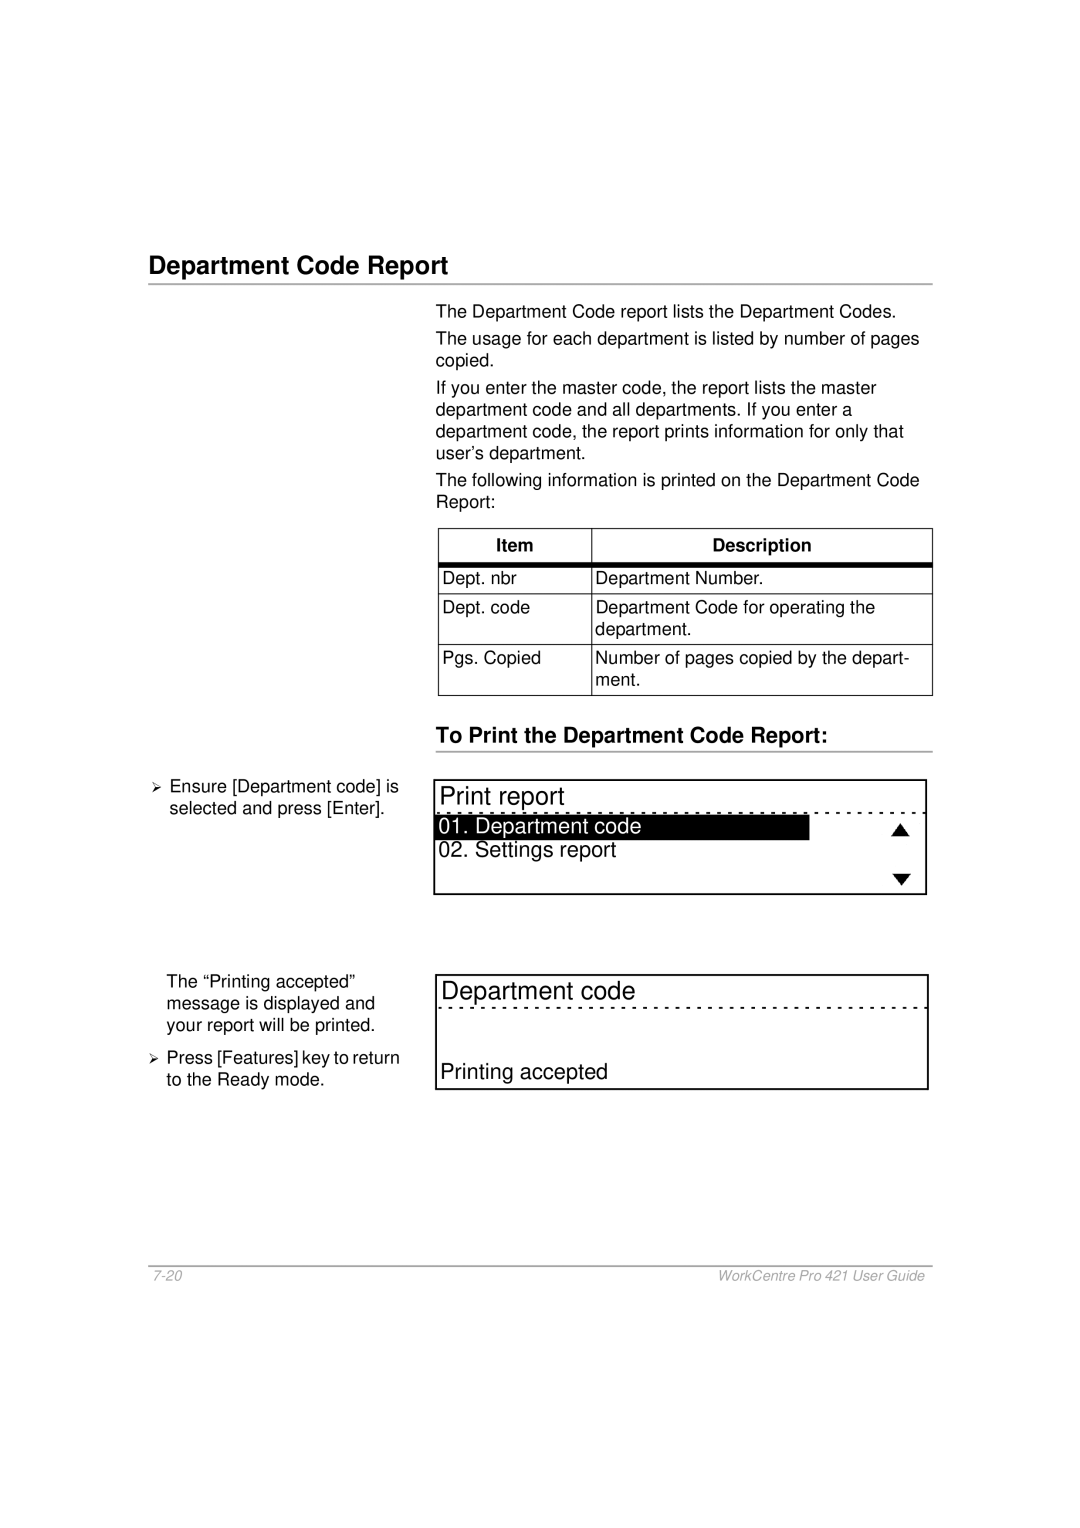 Xerox 421 manual Print report, Department code, To Print the Department Code Report, Settings report 